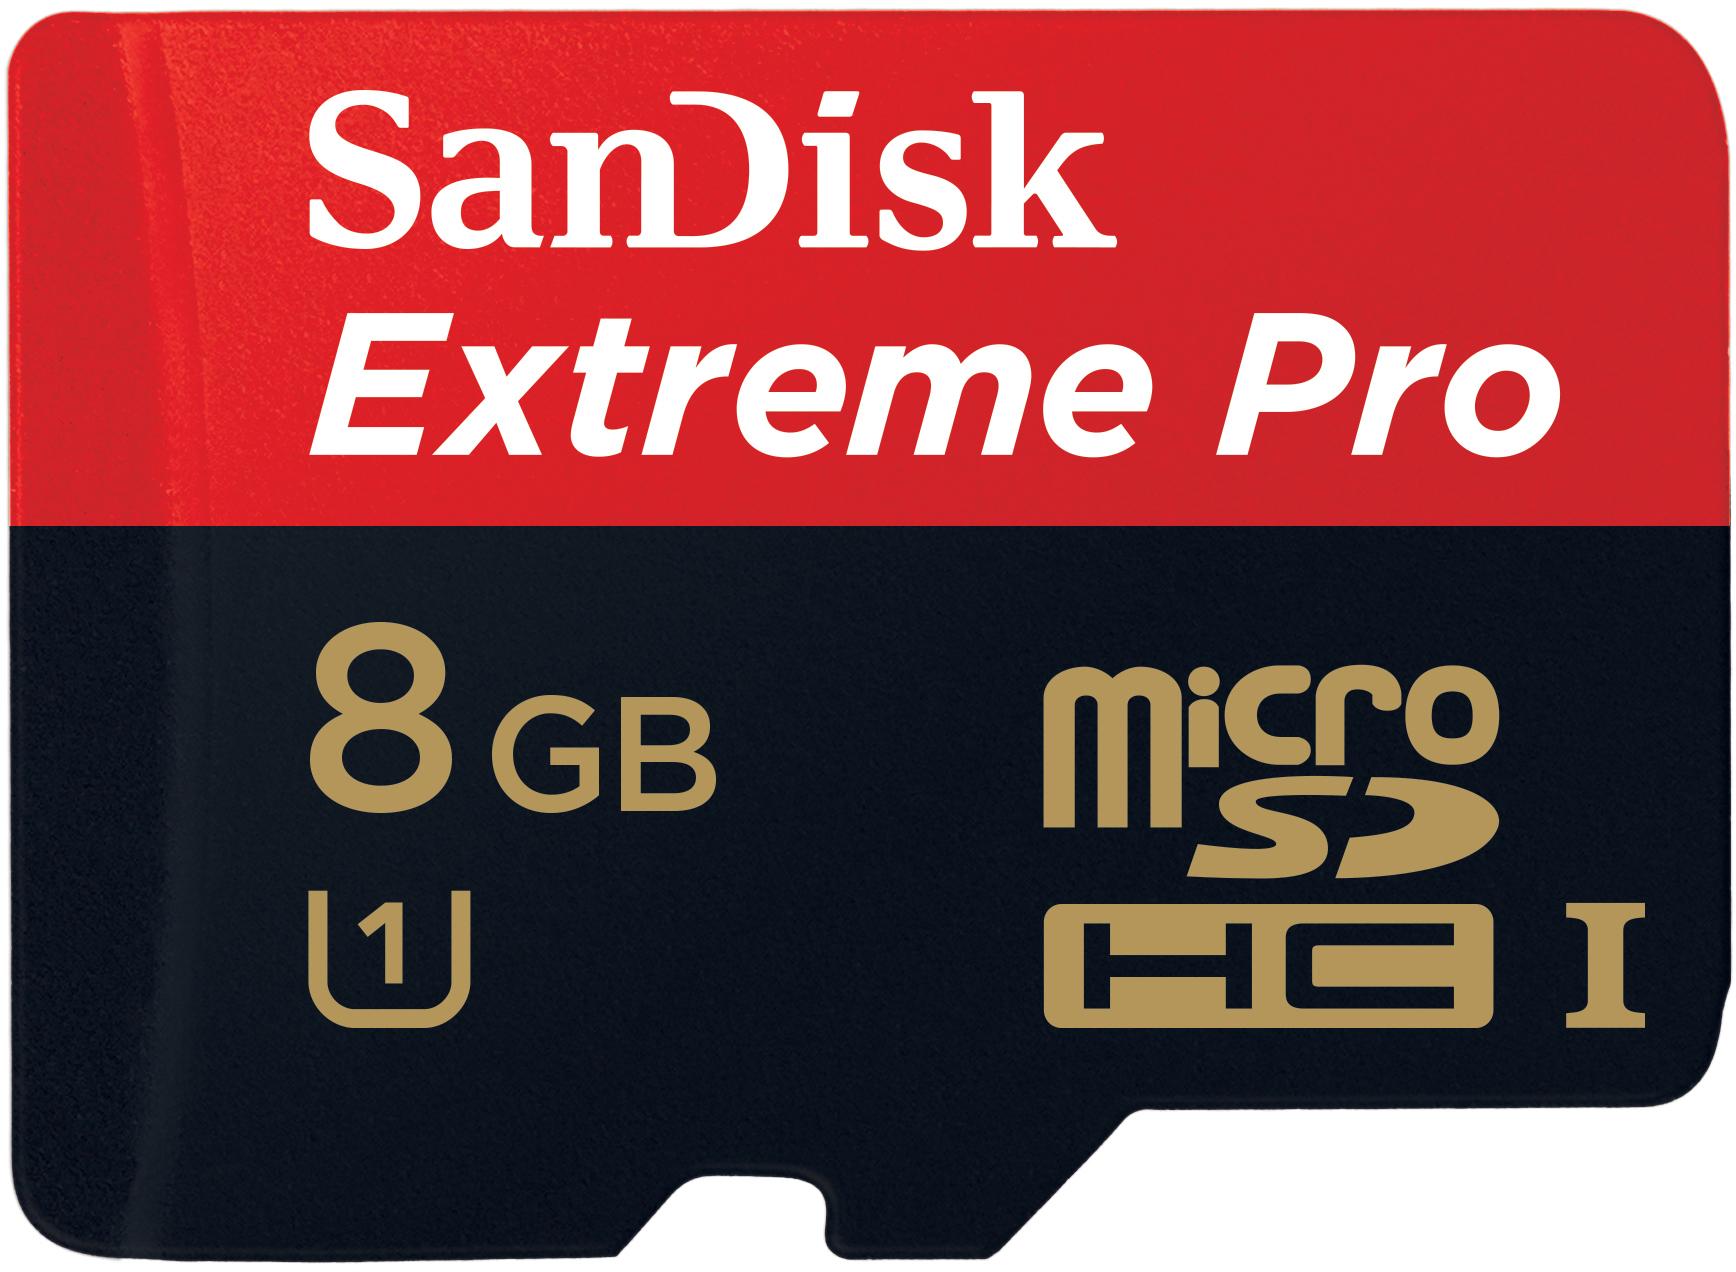 SanDisk Extreme Pro microSDHC UHS-I minneskort